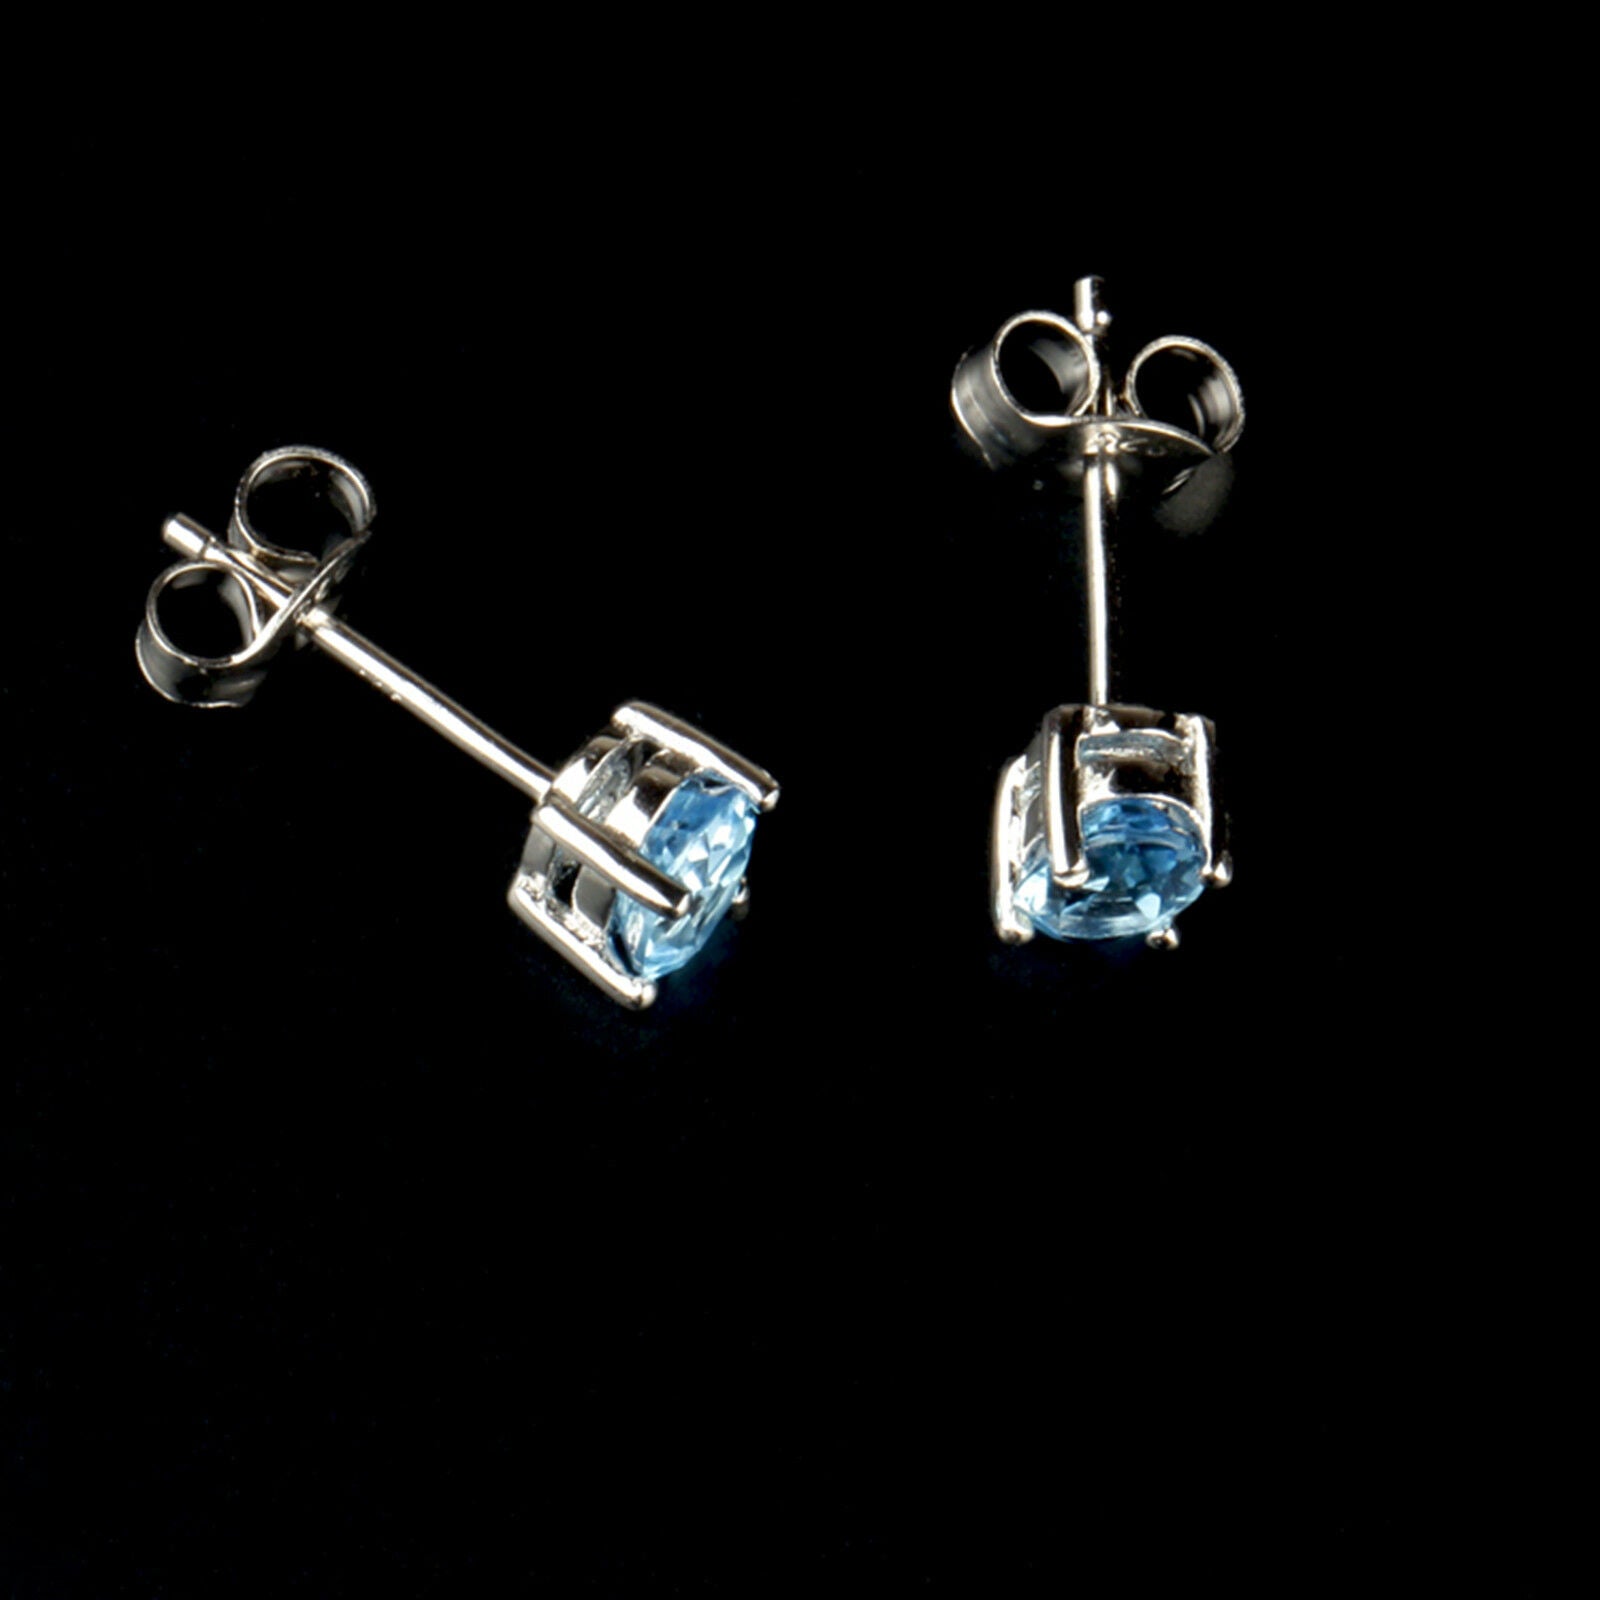 Sterling Silver Solitaire Blue Oval Cut CZ Stud Earrings Jewellery - sugarkittenlondon